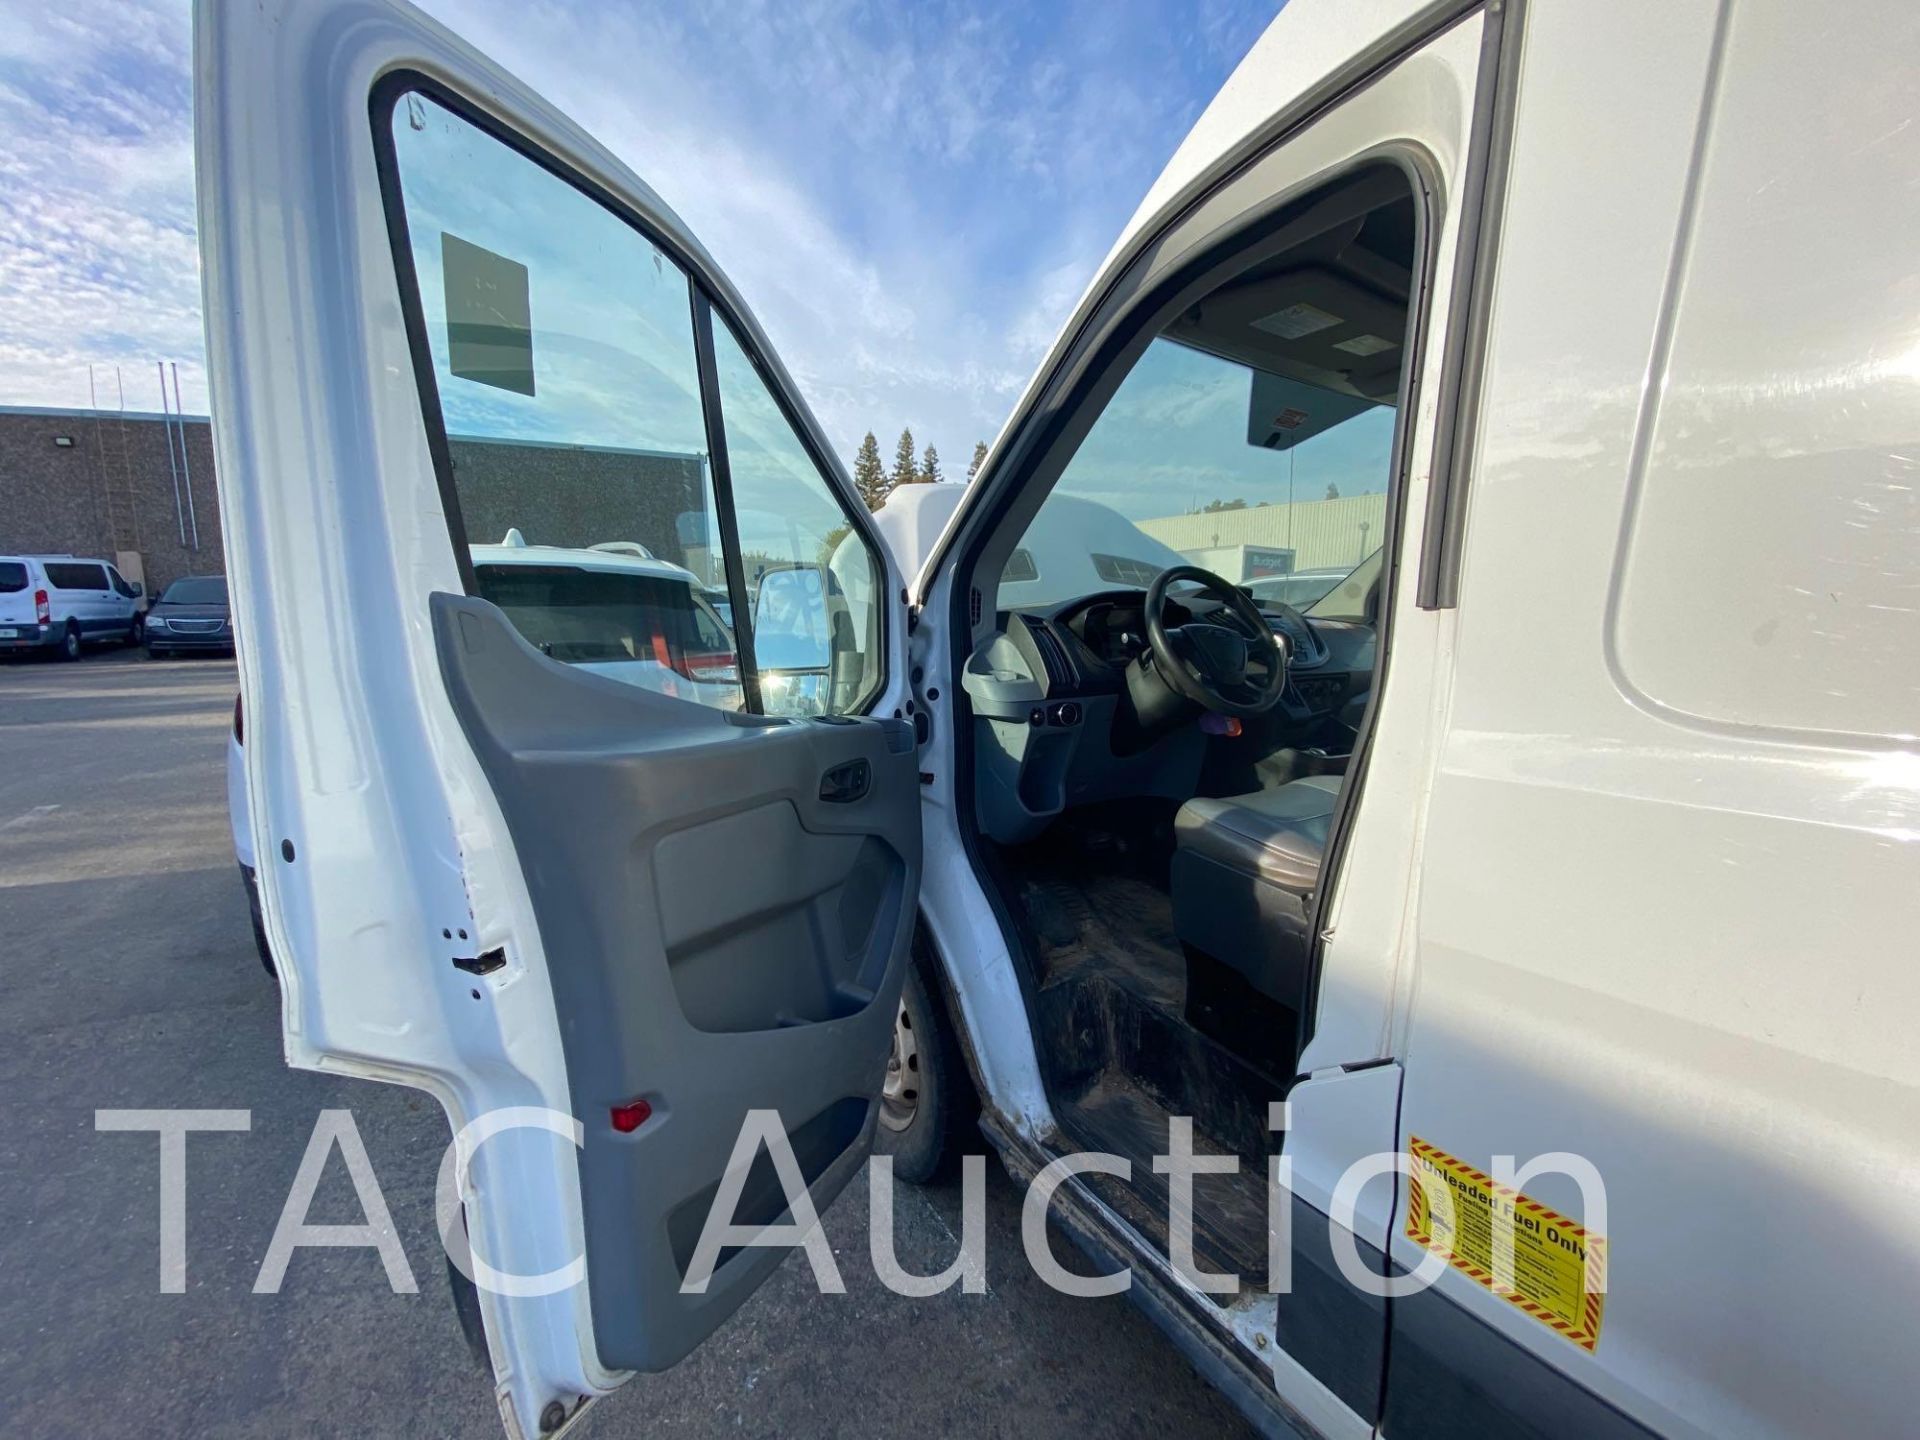 2018 Ford Transit 150 Cargo Van - Image 18 of 53